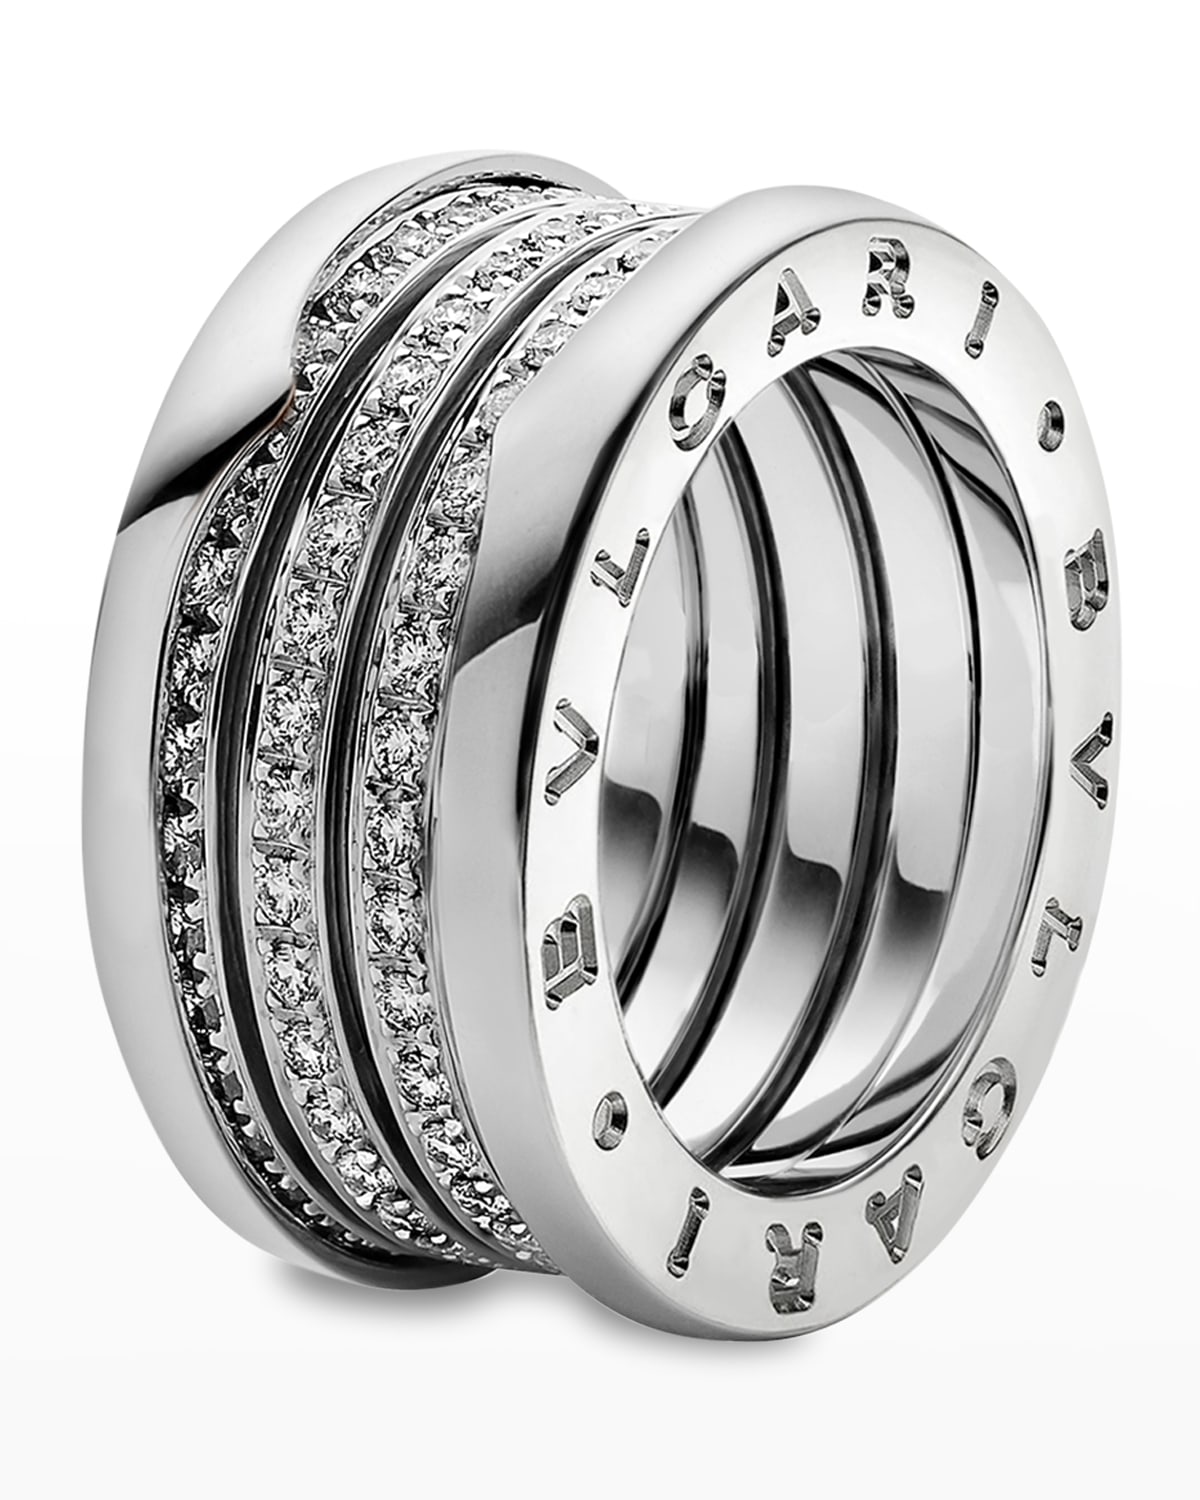 B.Zero1 18k White Gold 4-Band Ring with Diamond Trim, Size 54